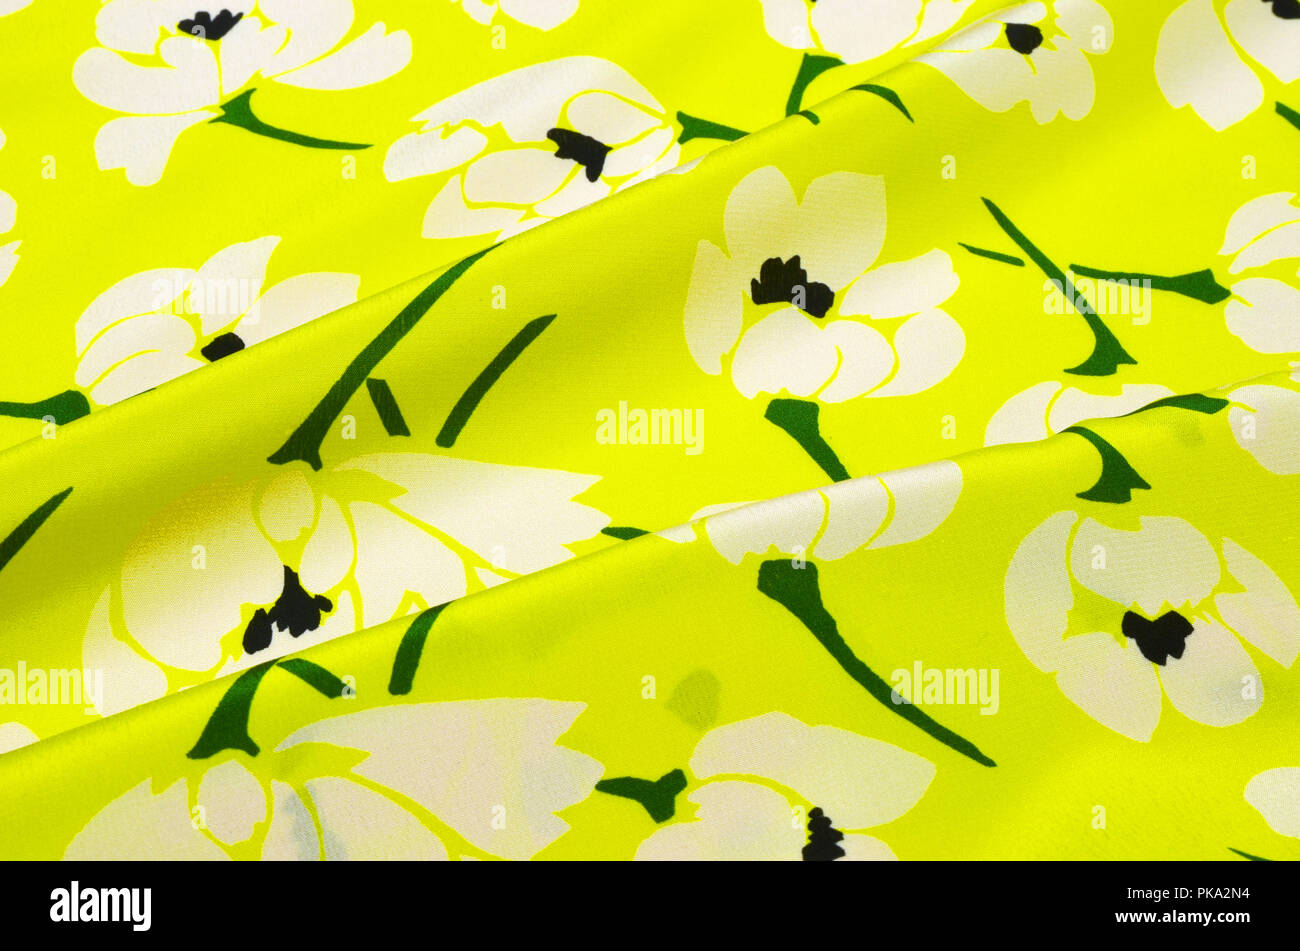 Tejido de seda, Crepe-de-chine adorno floral en amarillo Foto de stock